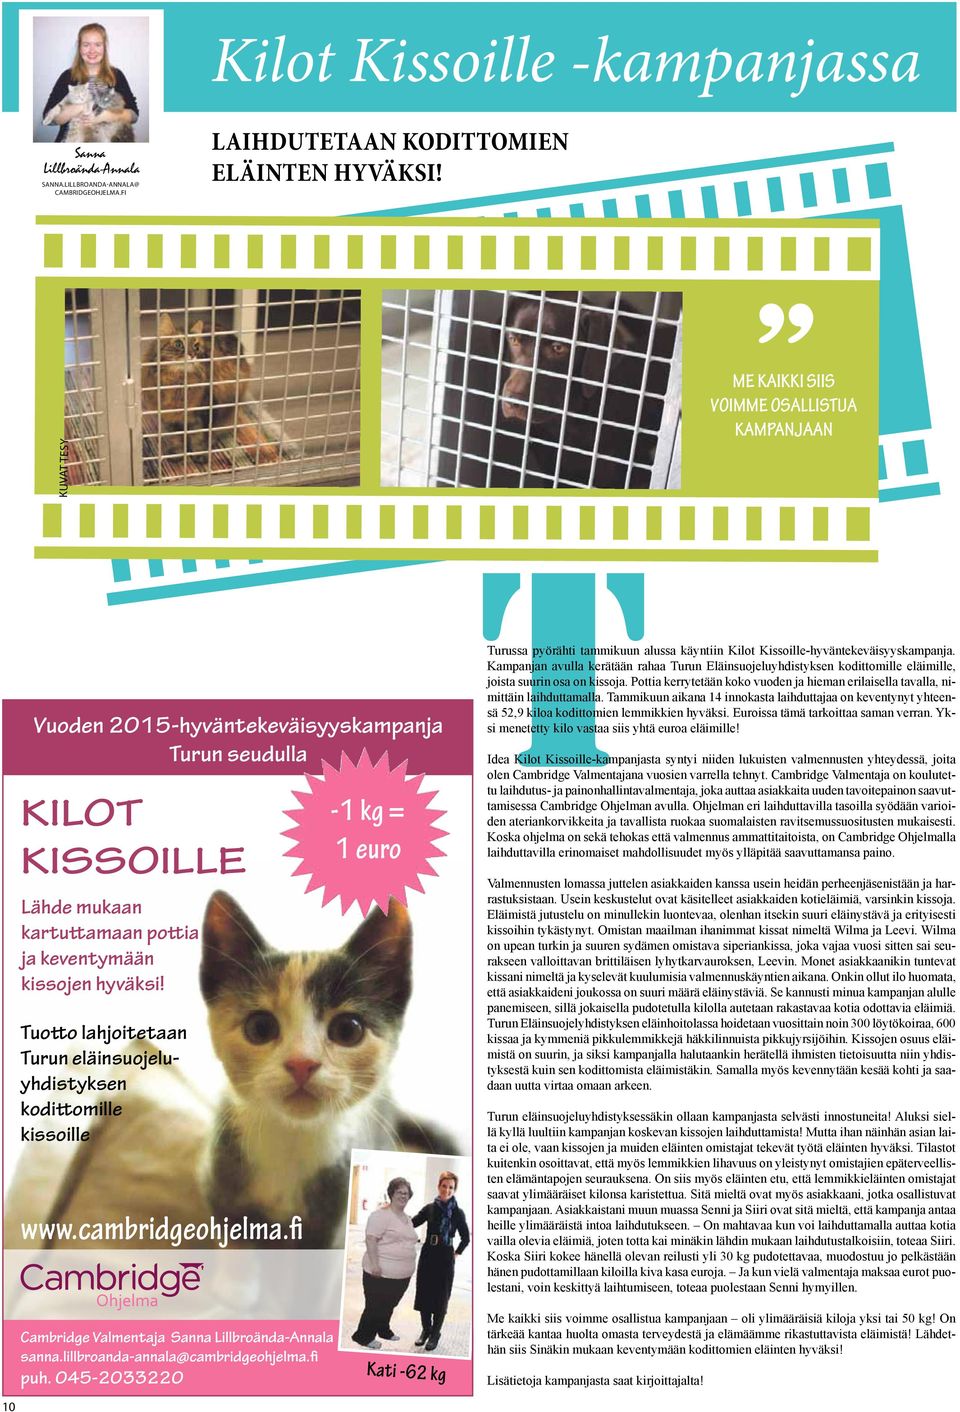 Tuotto lahjoitetaan Turun eläinsuojeluyhdistyksen kodittomille kissoille www.cambridgeohjelma.fi -1 kg = 1 euro Turussa pyörähti tammikuun alussa käyntiin Kilot Kissoille-hyväntekeväisyyskampanja.